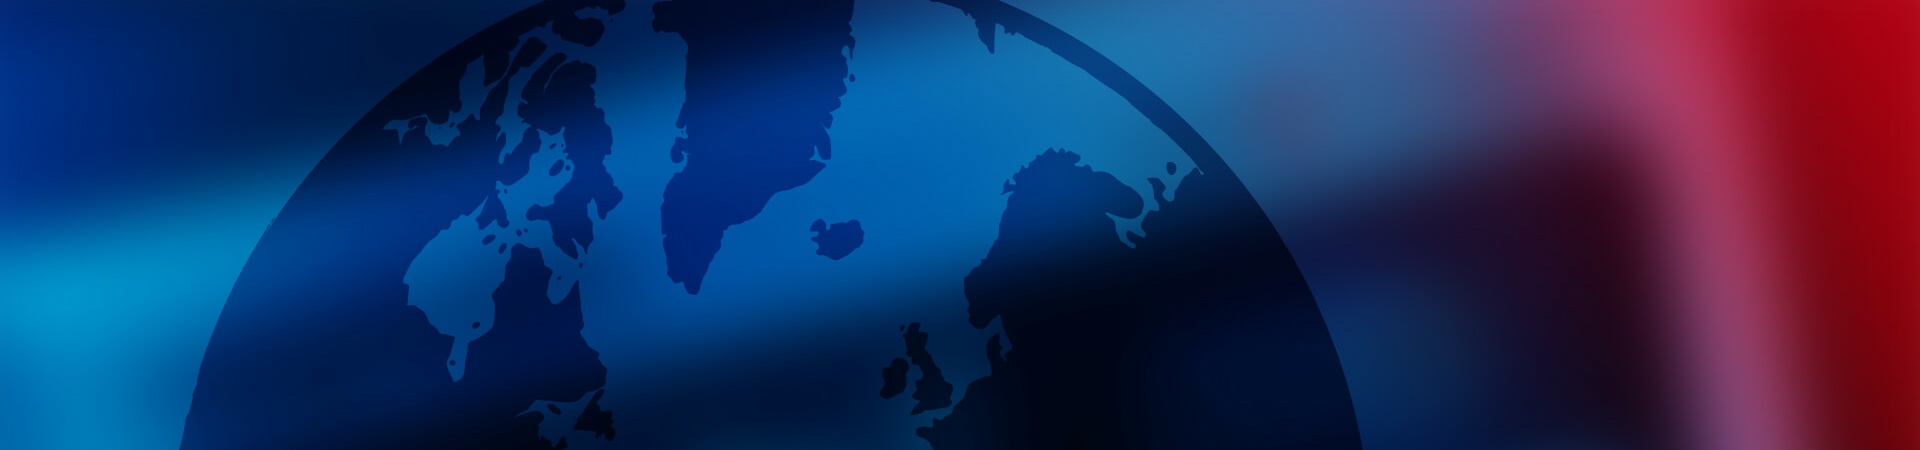 Obraz barwiony na niebiesko, przedstawiający stylizowaną ziemię. ctrlX World to ekosystem partnerski rozwiązania automatyzacji ctrlX AUTOMATION.